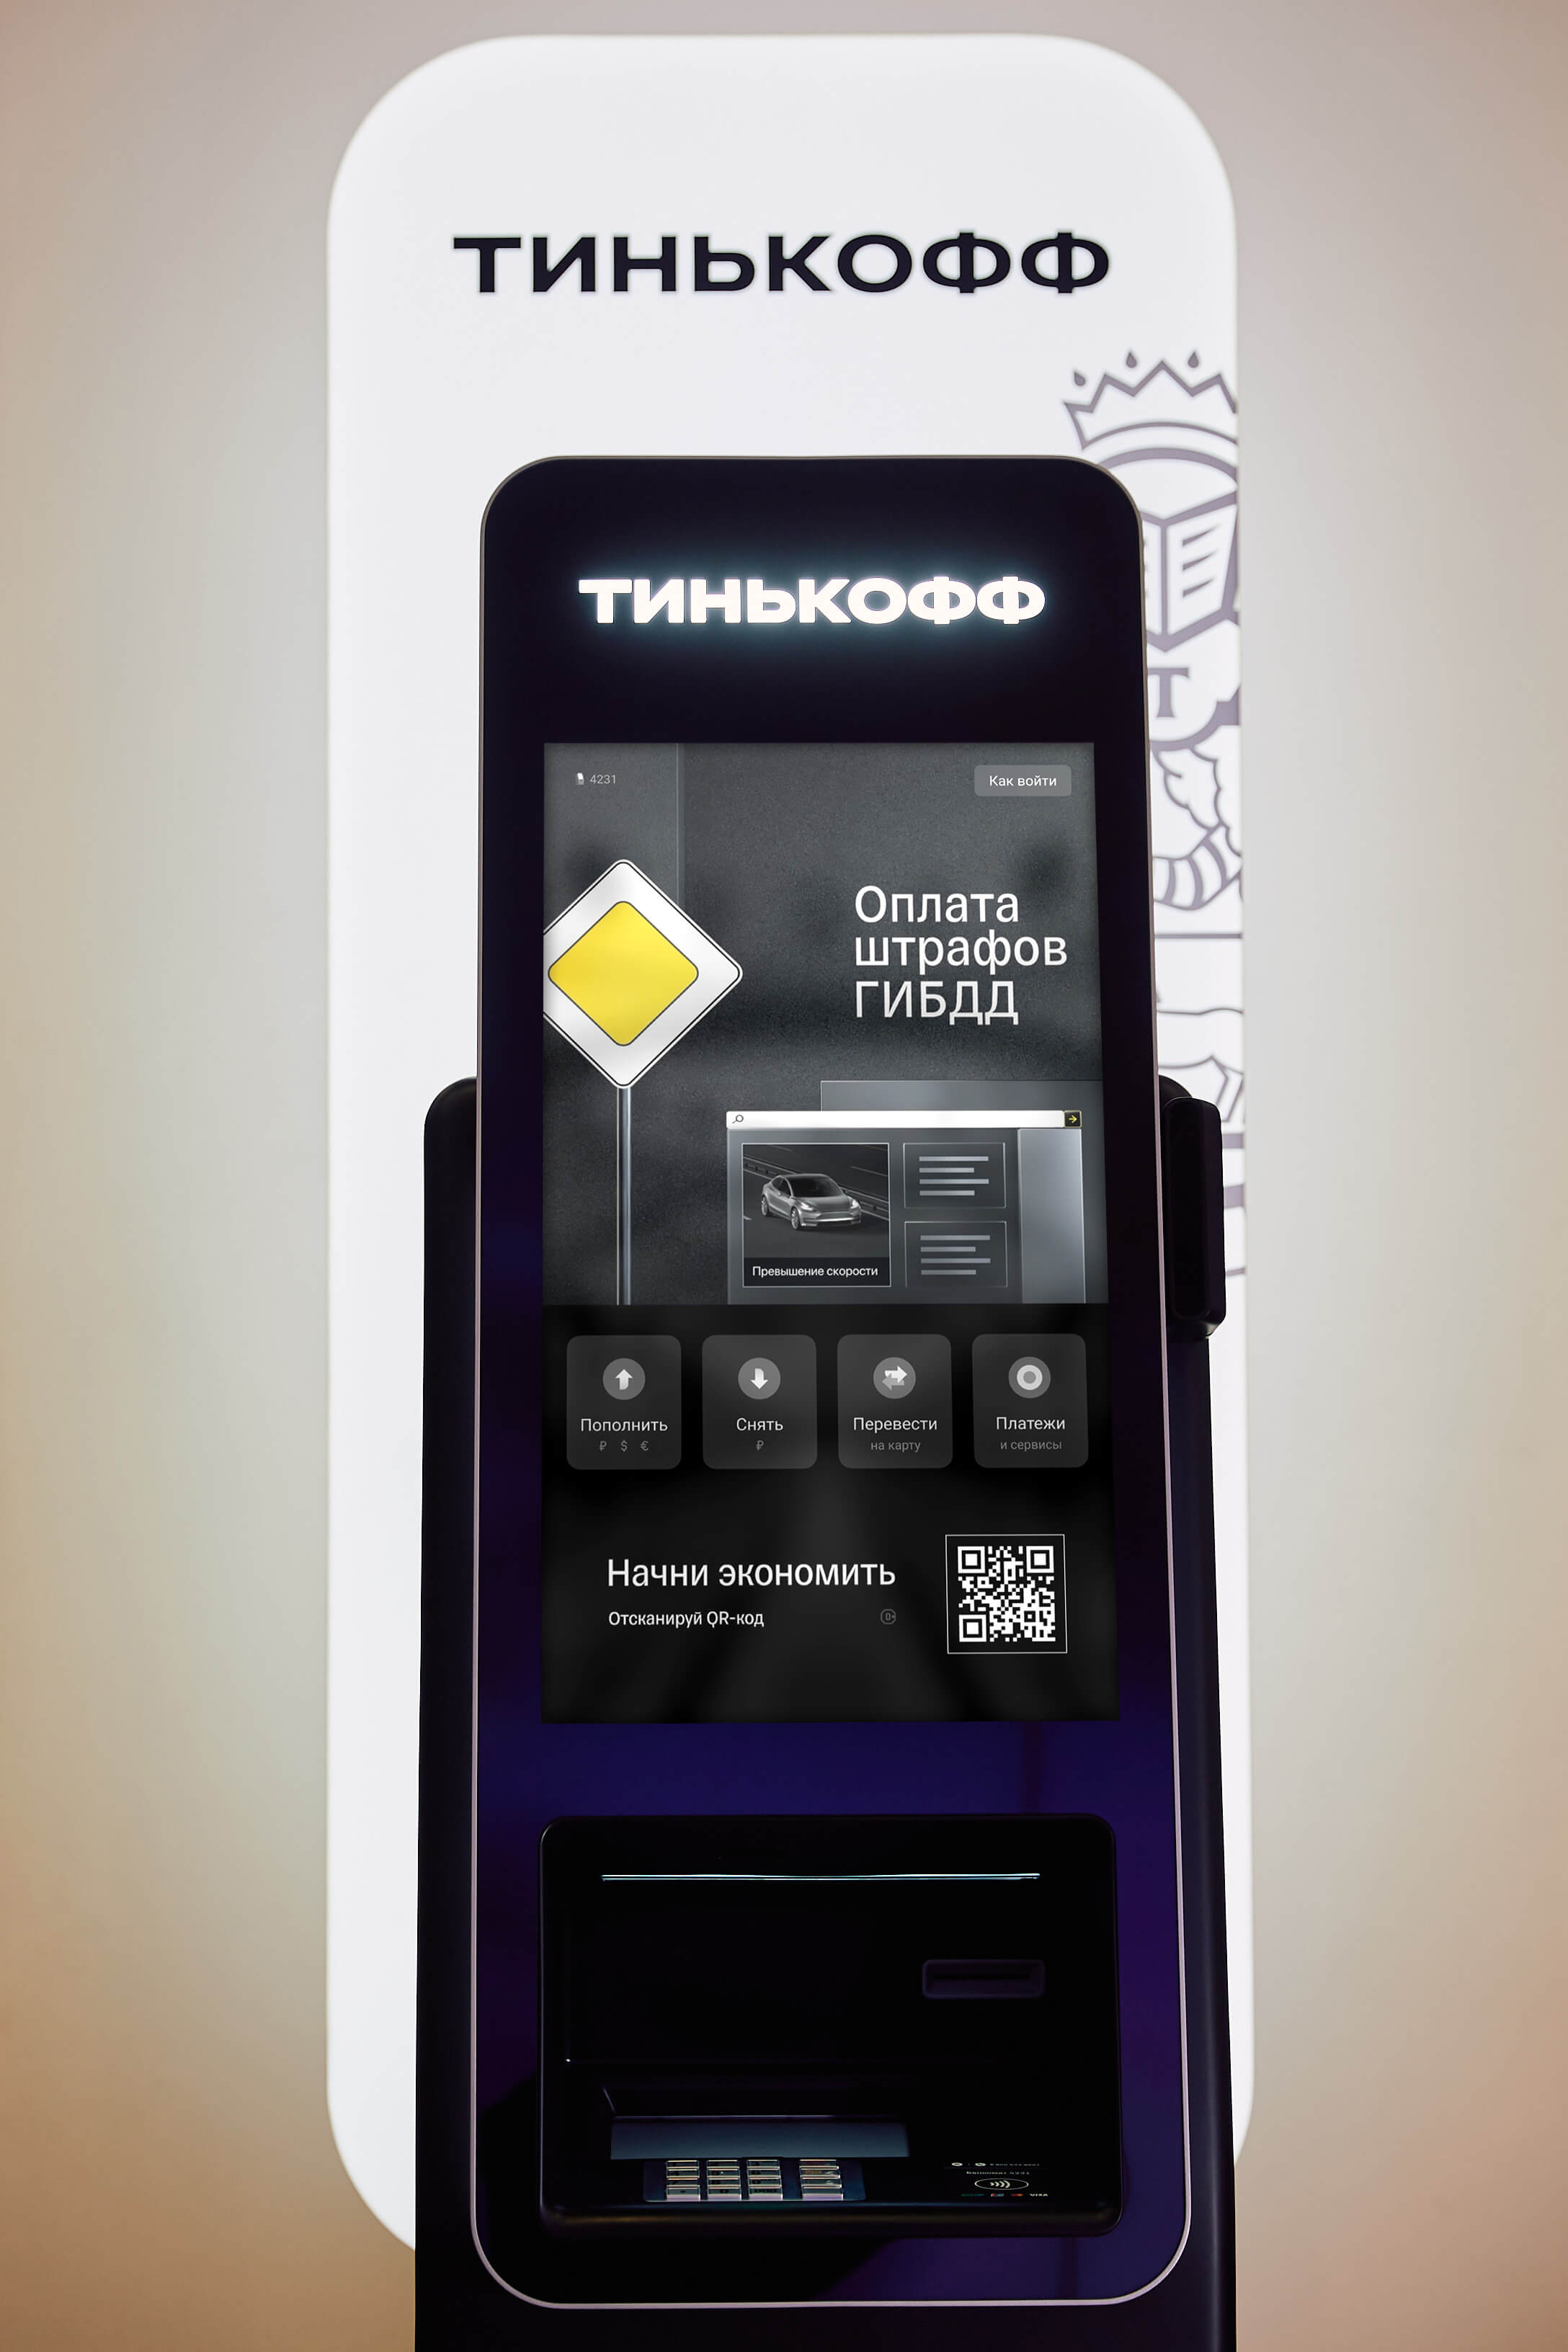 Он такой «Один»: Тинькофф выпустил первый российский банкомат собственного  производства — Тинькофф новости